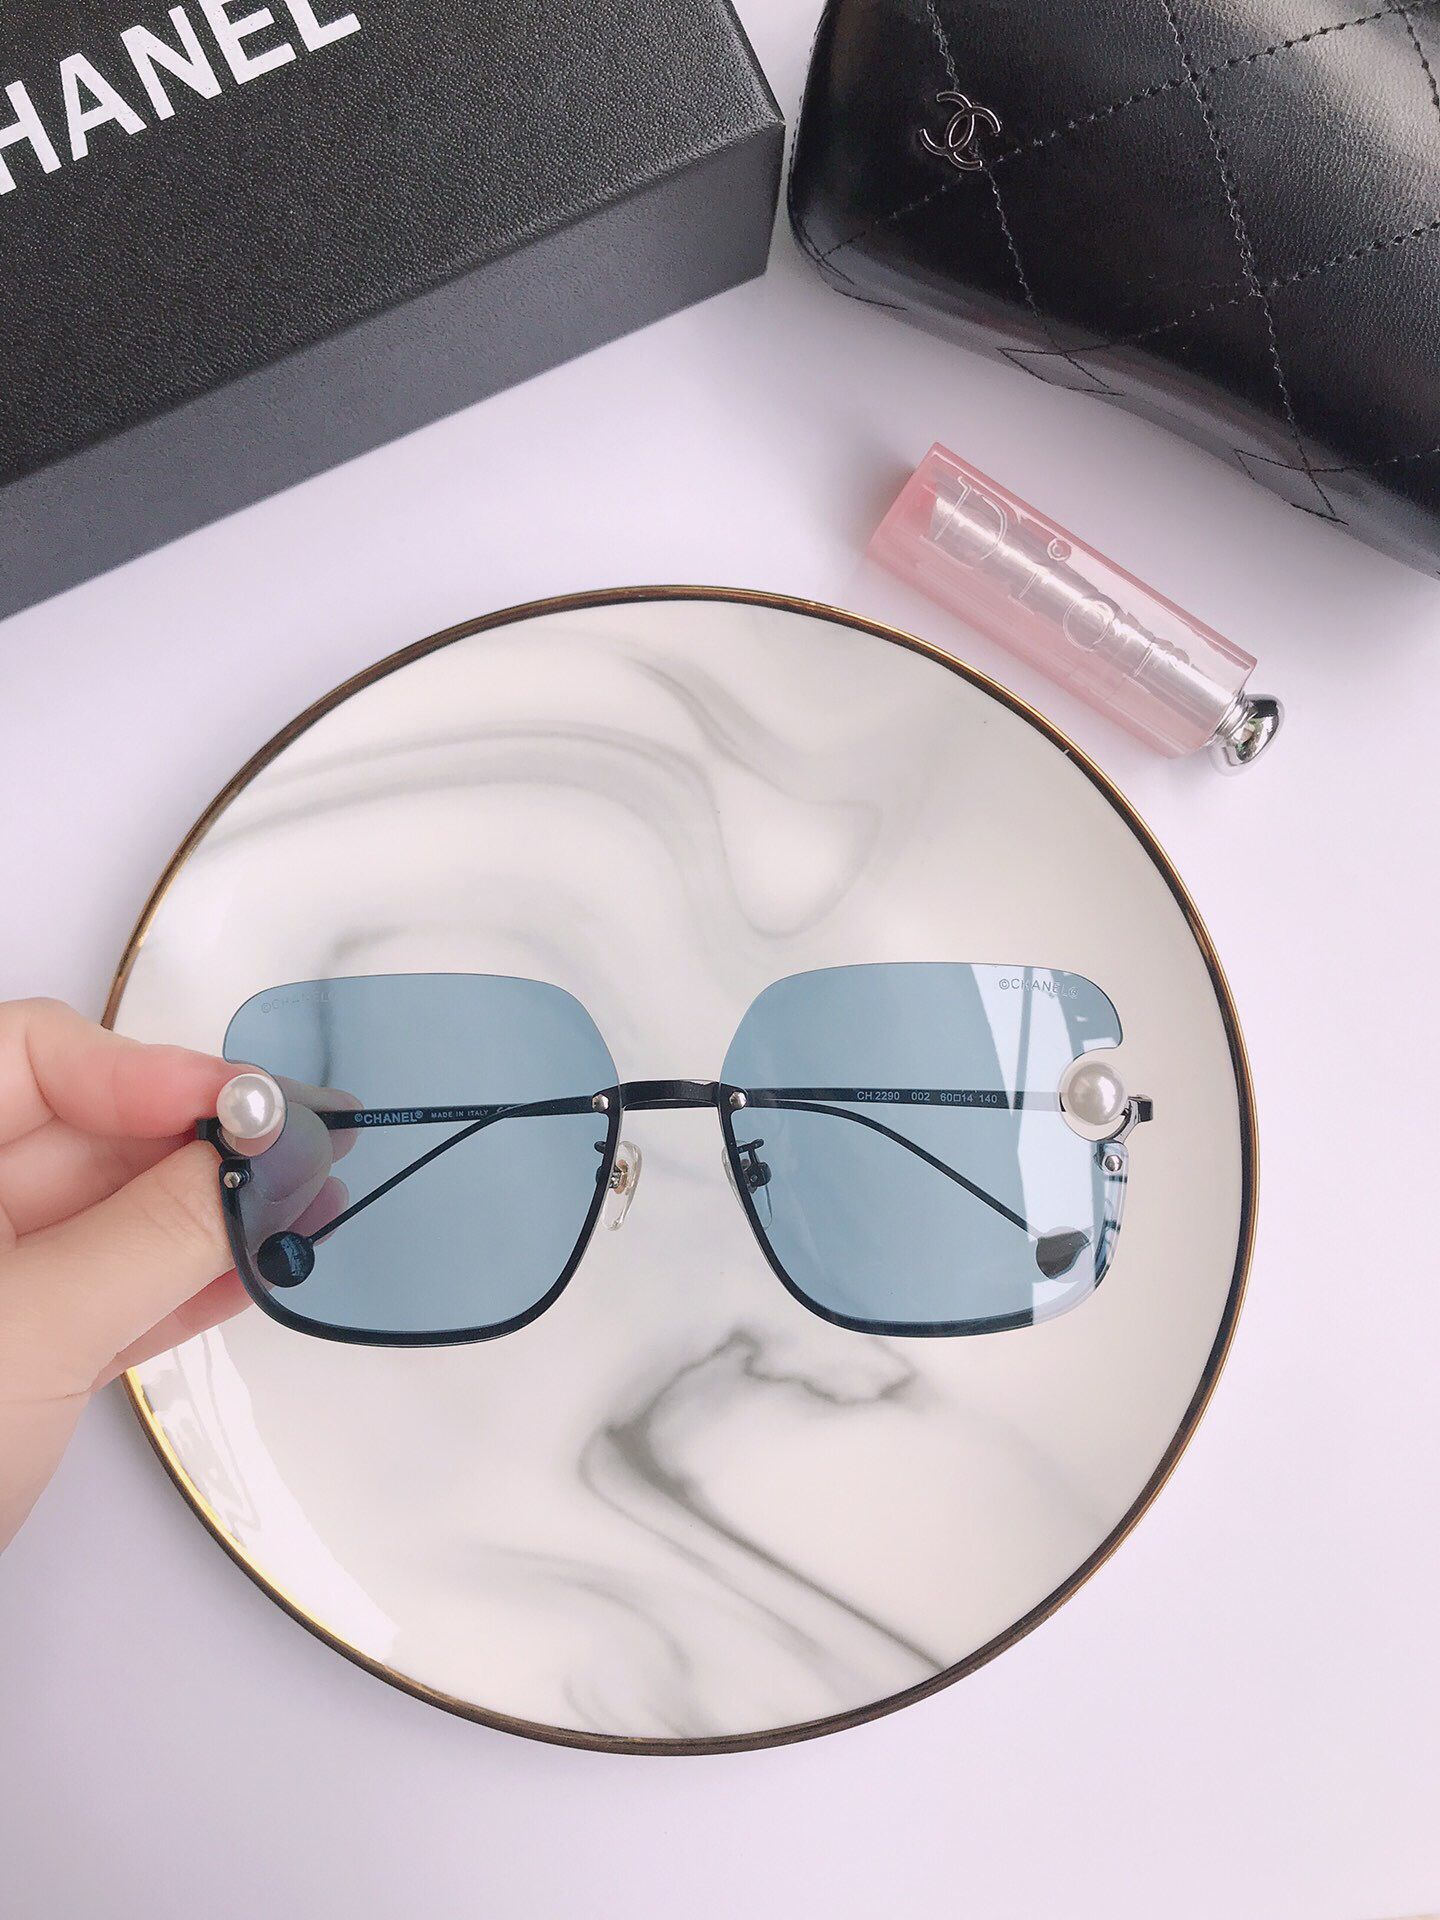 奢品香奈儿女士眼镜 香奈儿经典珍珠系列时尚方框太阳镜 奢品CHANEL眼镜网站 